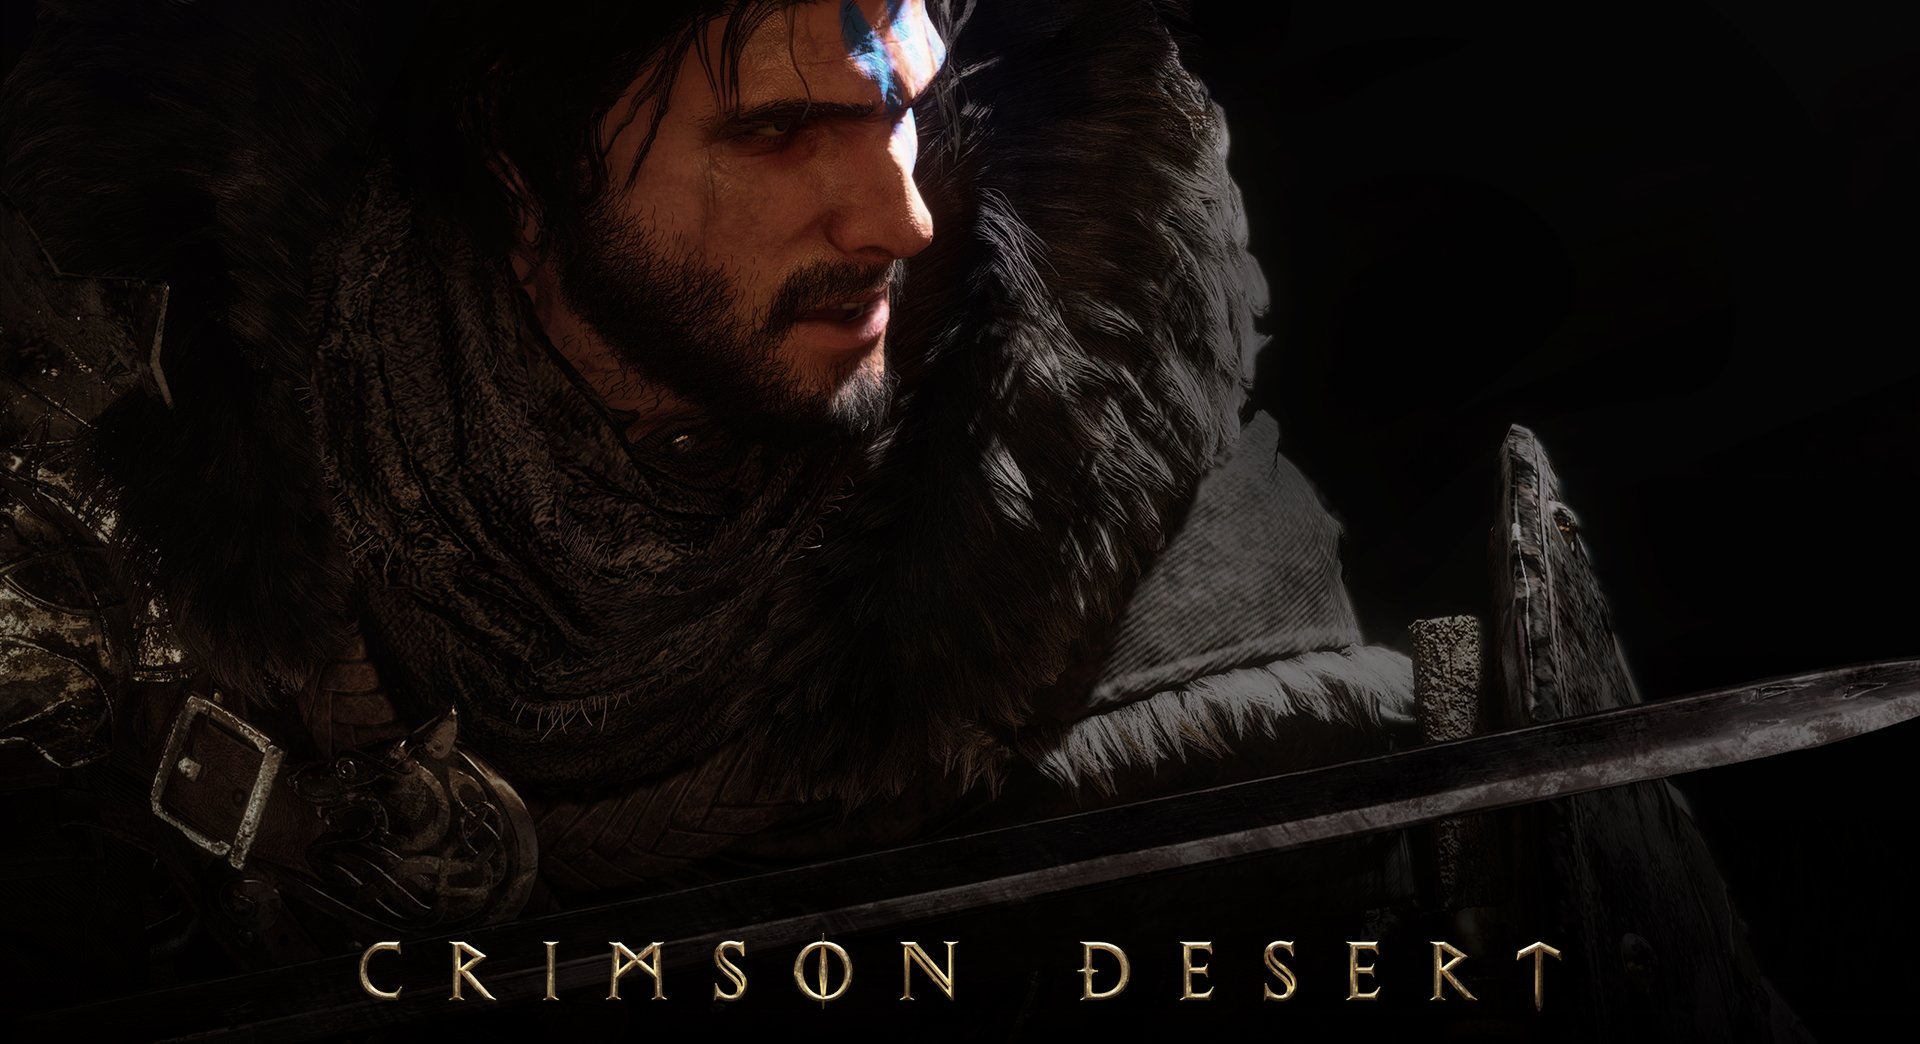 pearl abyss: Black Desert Online developers reveal new gameplay trailer for  Crimson Desert during Gamescom